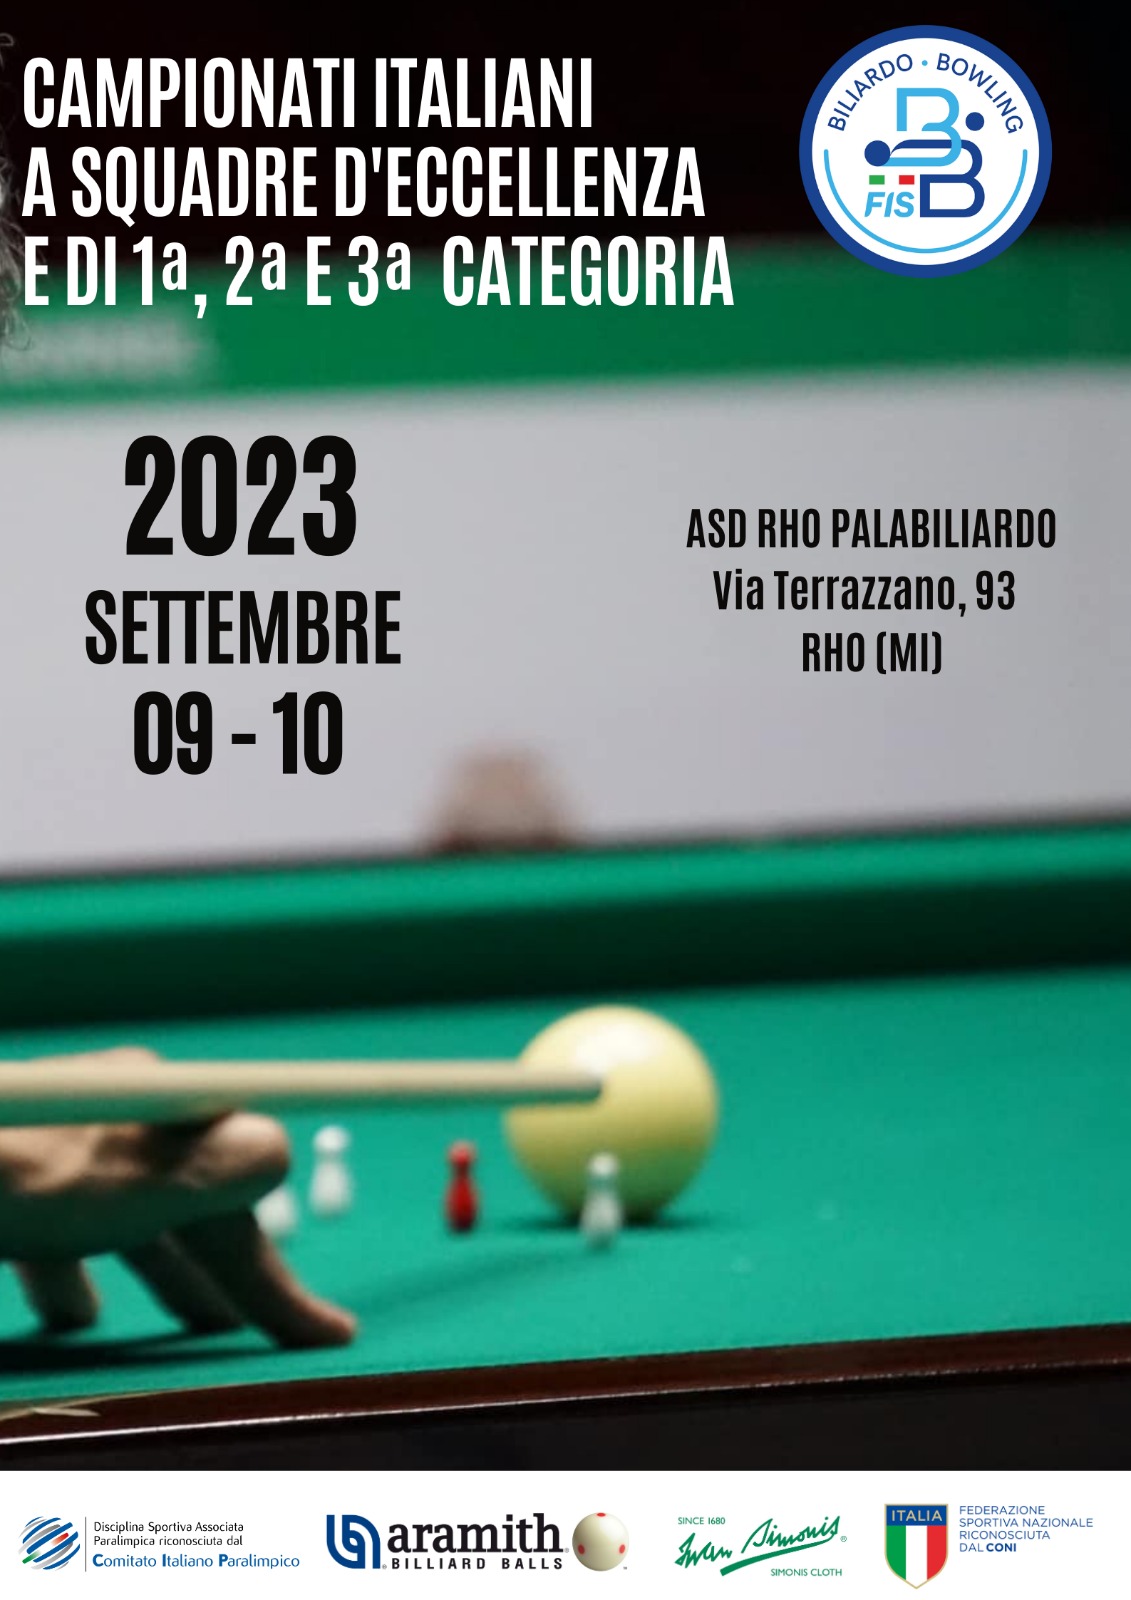 CAMPIONATI ITALIANI A SQUADRE DE'ECCELLENZA E DI 1^, 2^ E 3^ CATEGORIA 2022/2023